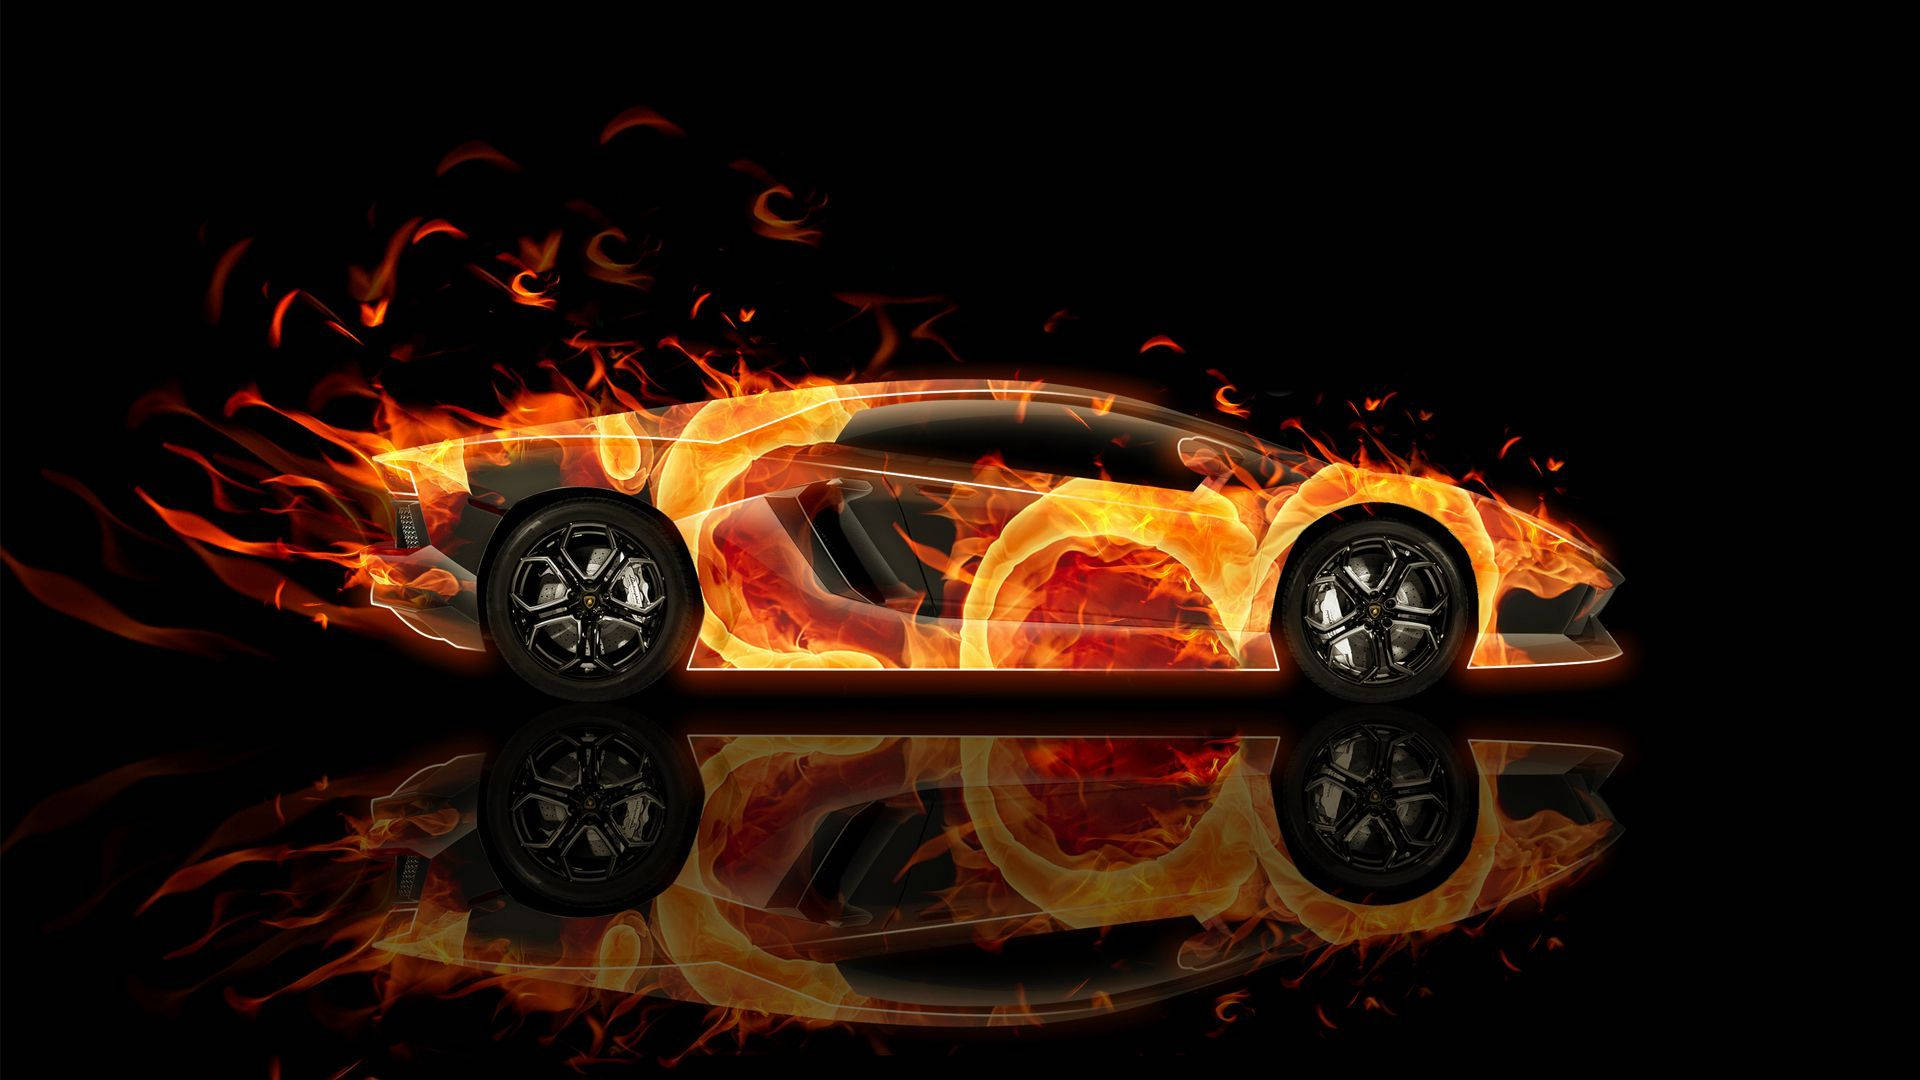 Cool Cars: Fiery Lamborghini Design Wallpaper